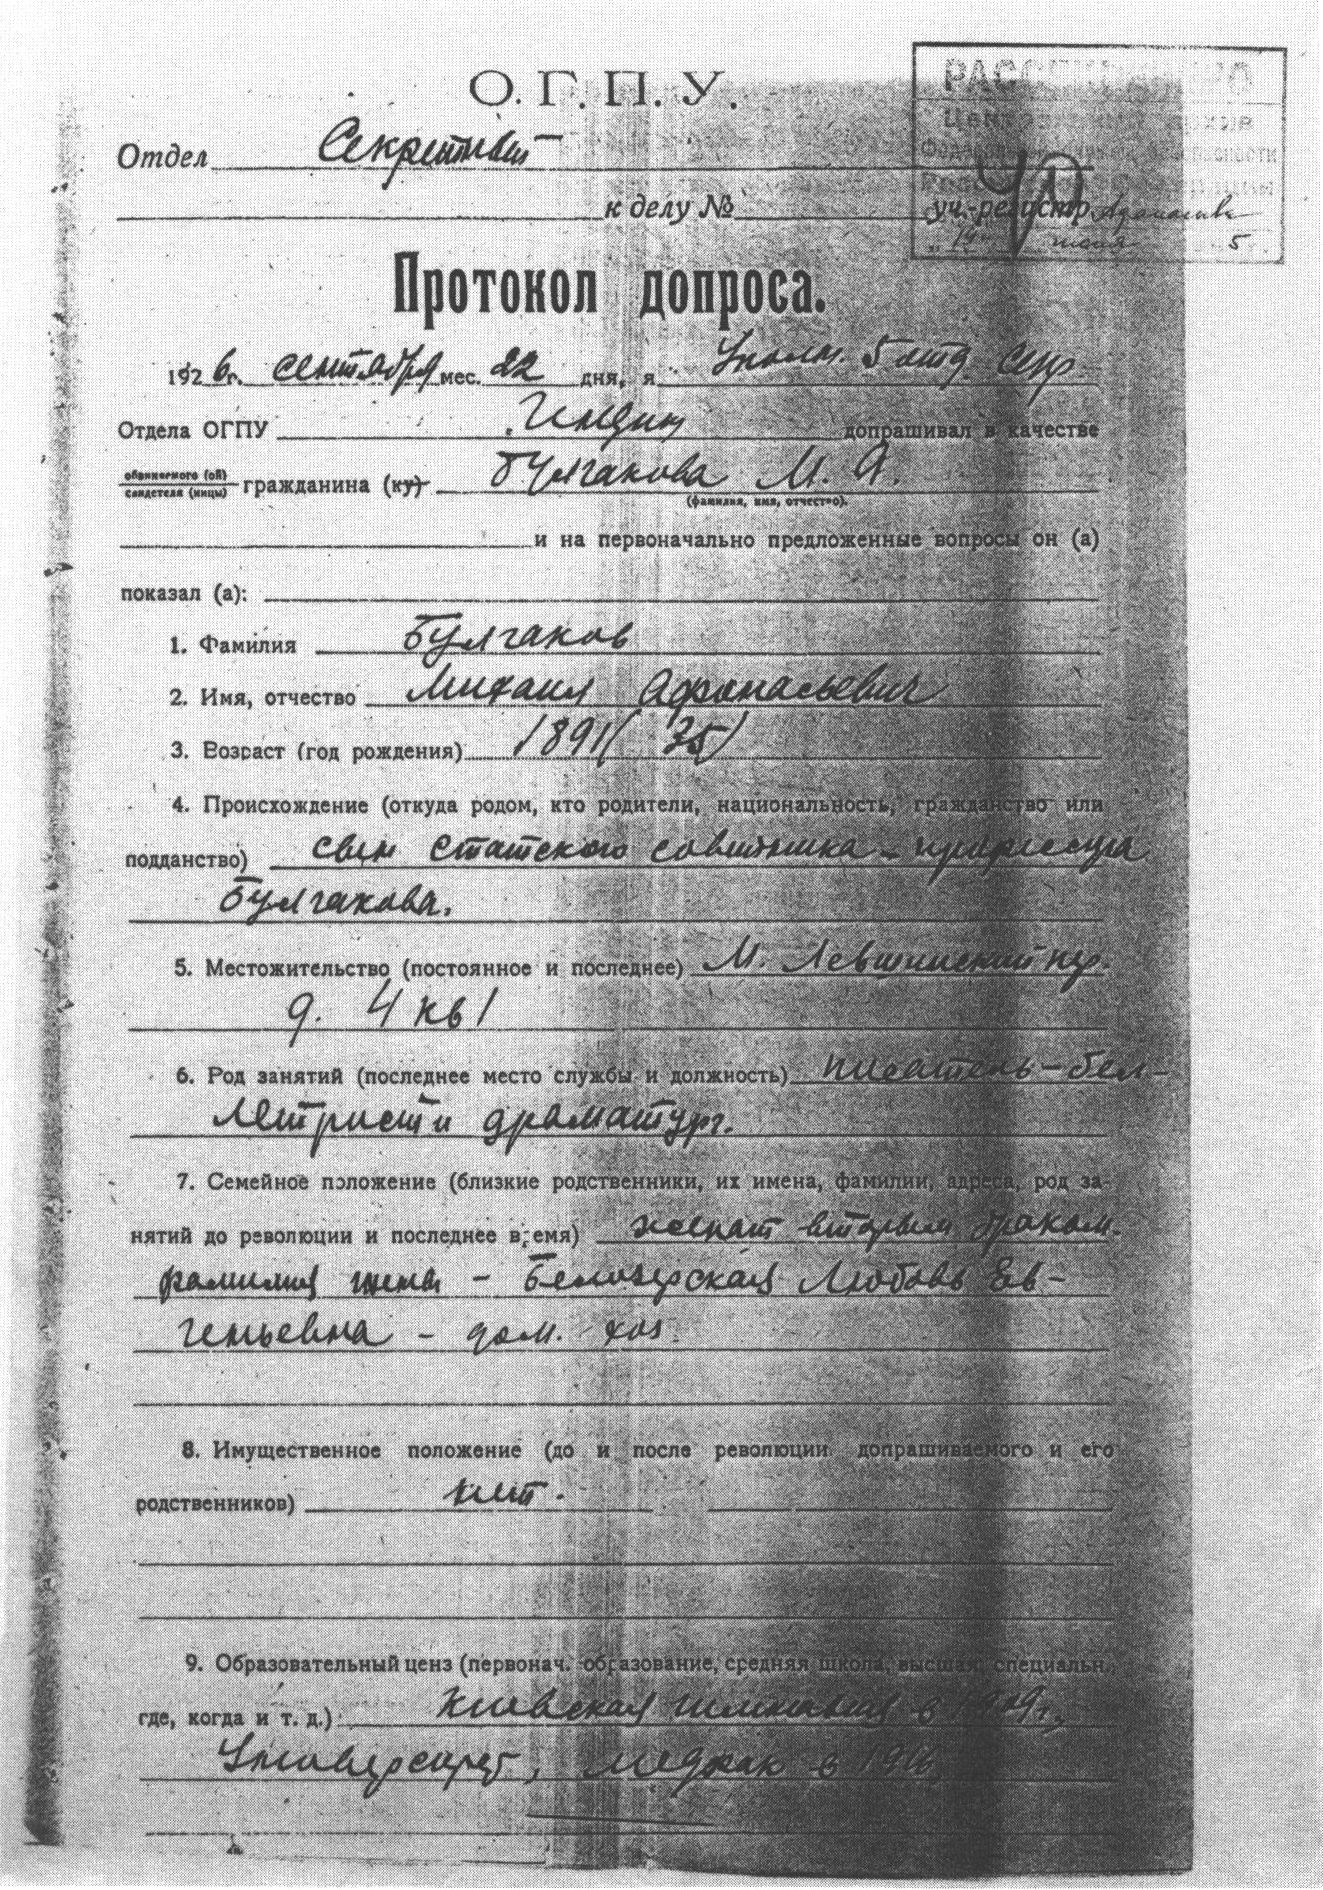 Копия протокола допроса Булгакова в ОГПУ. 22 сентября 1926 г.